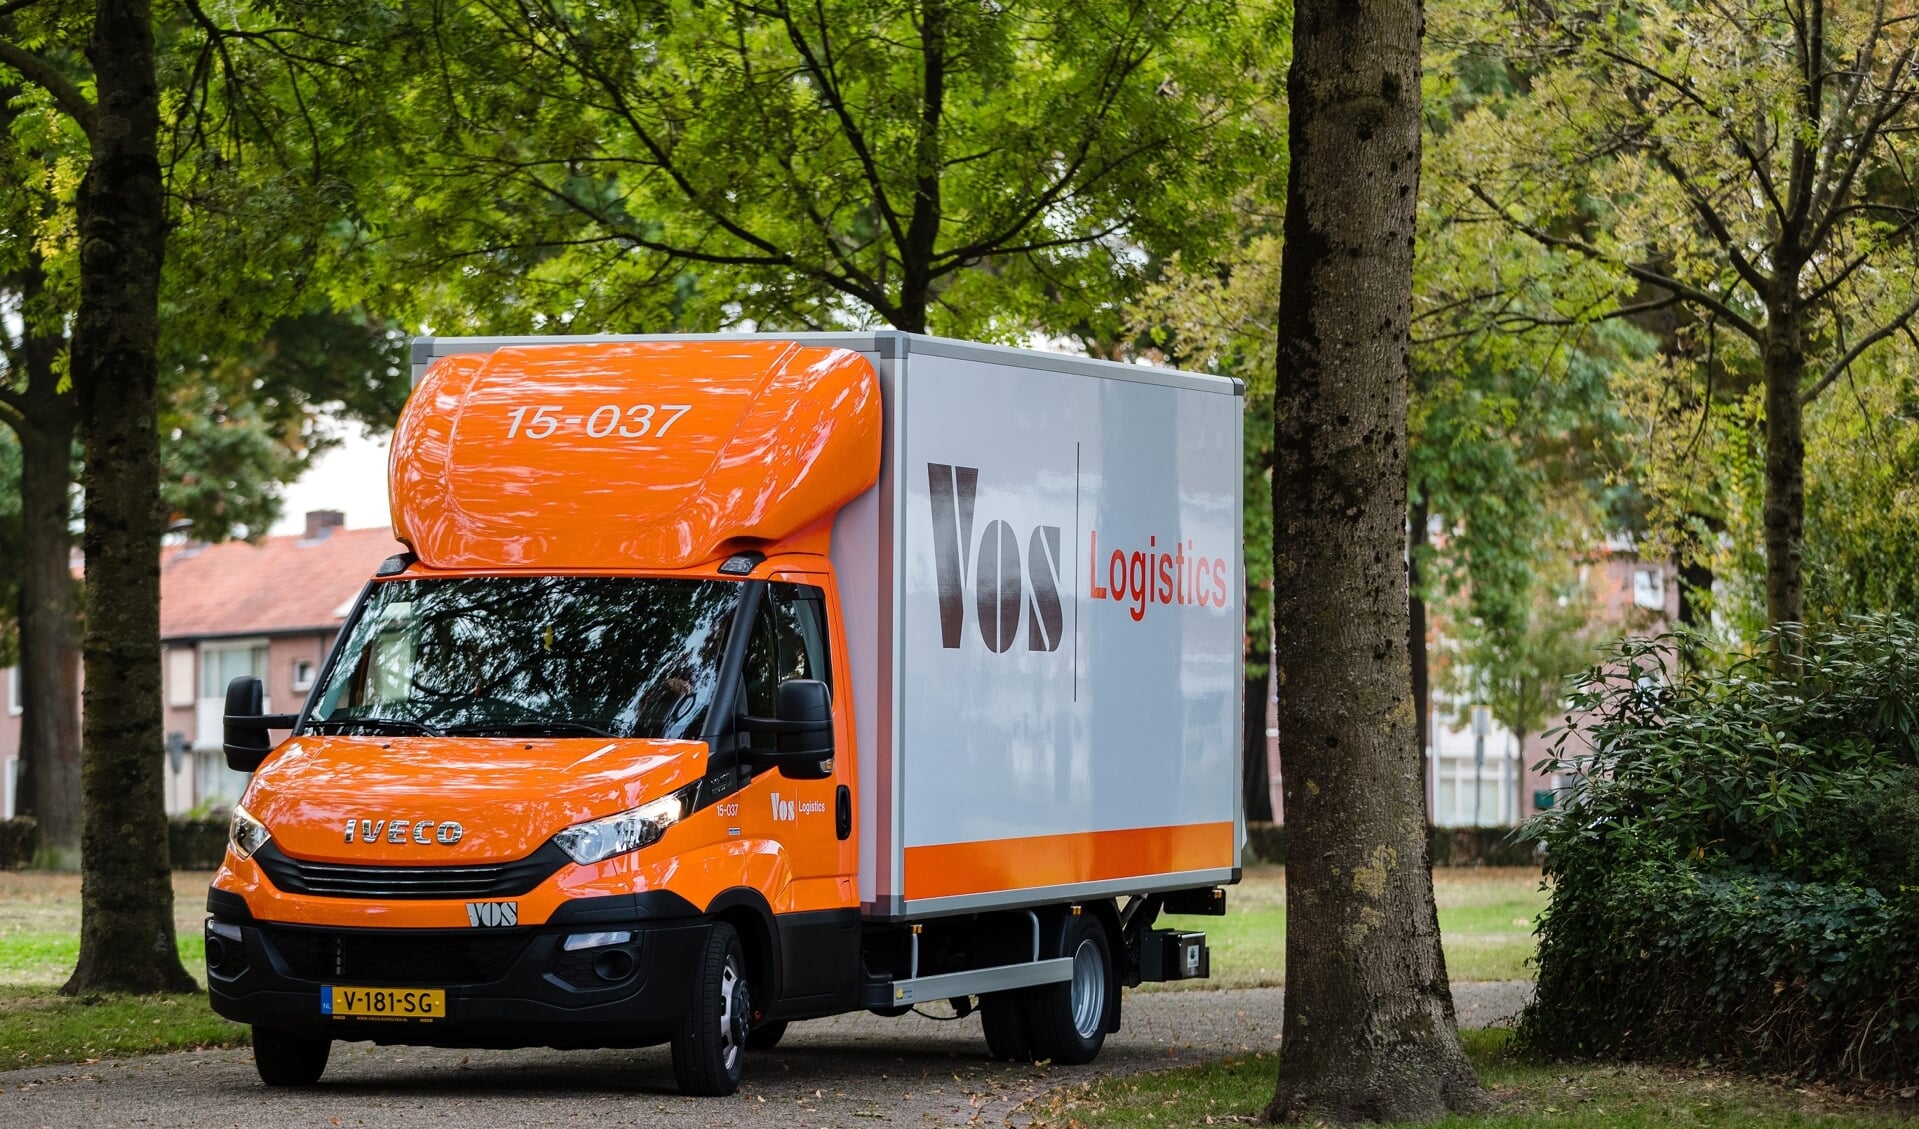 Vos Logistics wil SNEL Shared Logistics overnemen.